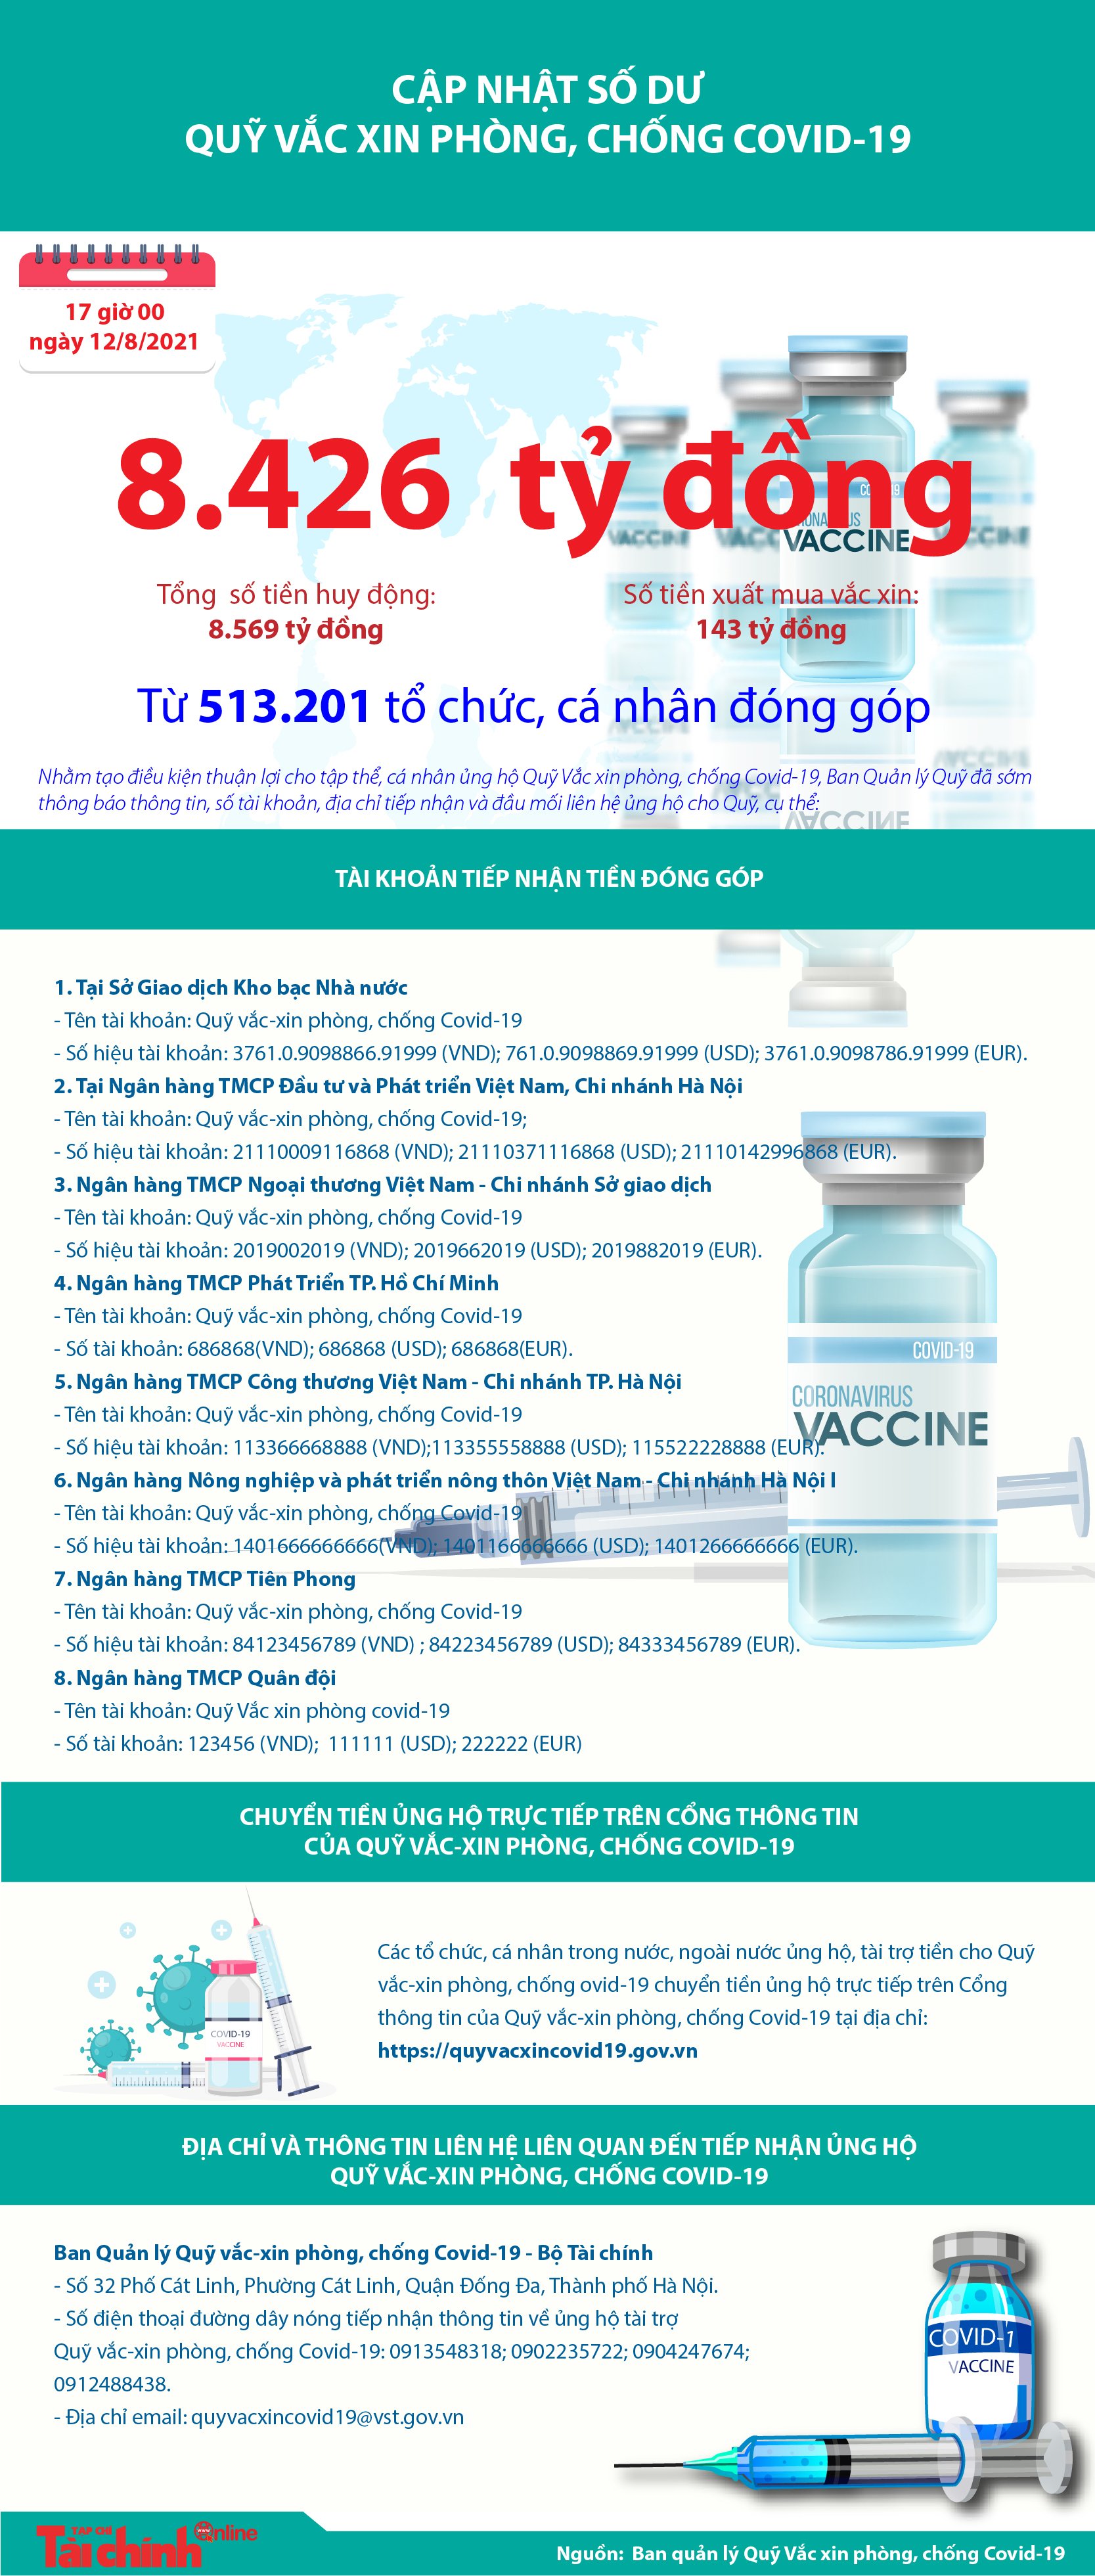 [Infographics] Quỹ Vắc xin phòng, chống COVID-19 còn dư 8.426 tỷ đồng - Ảnh 1